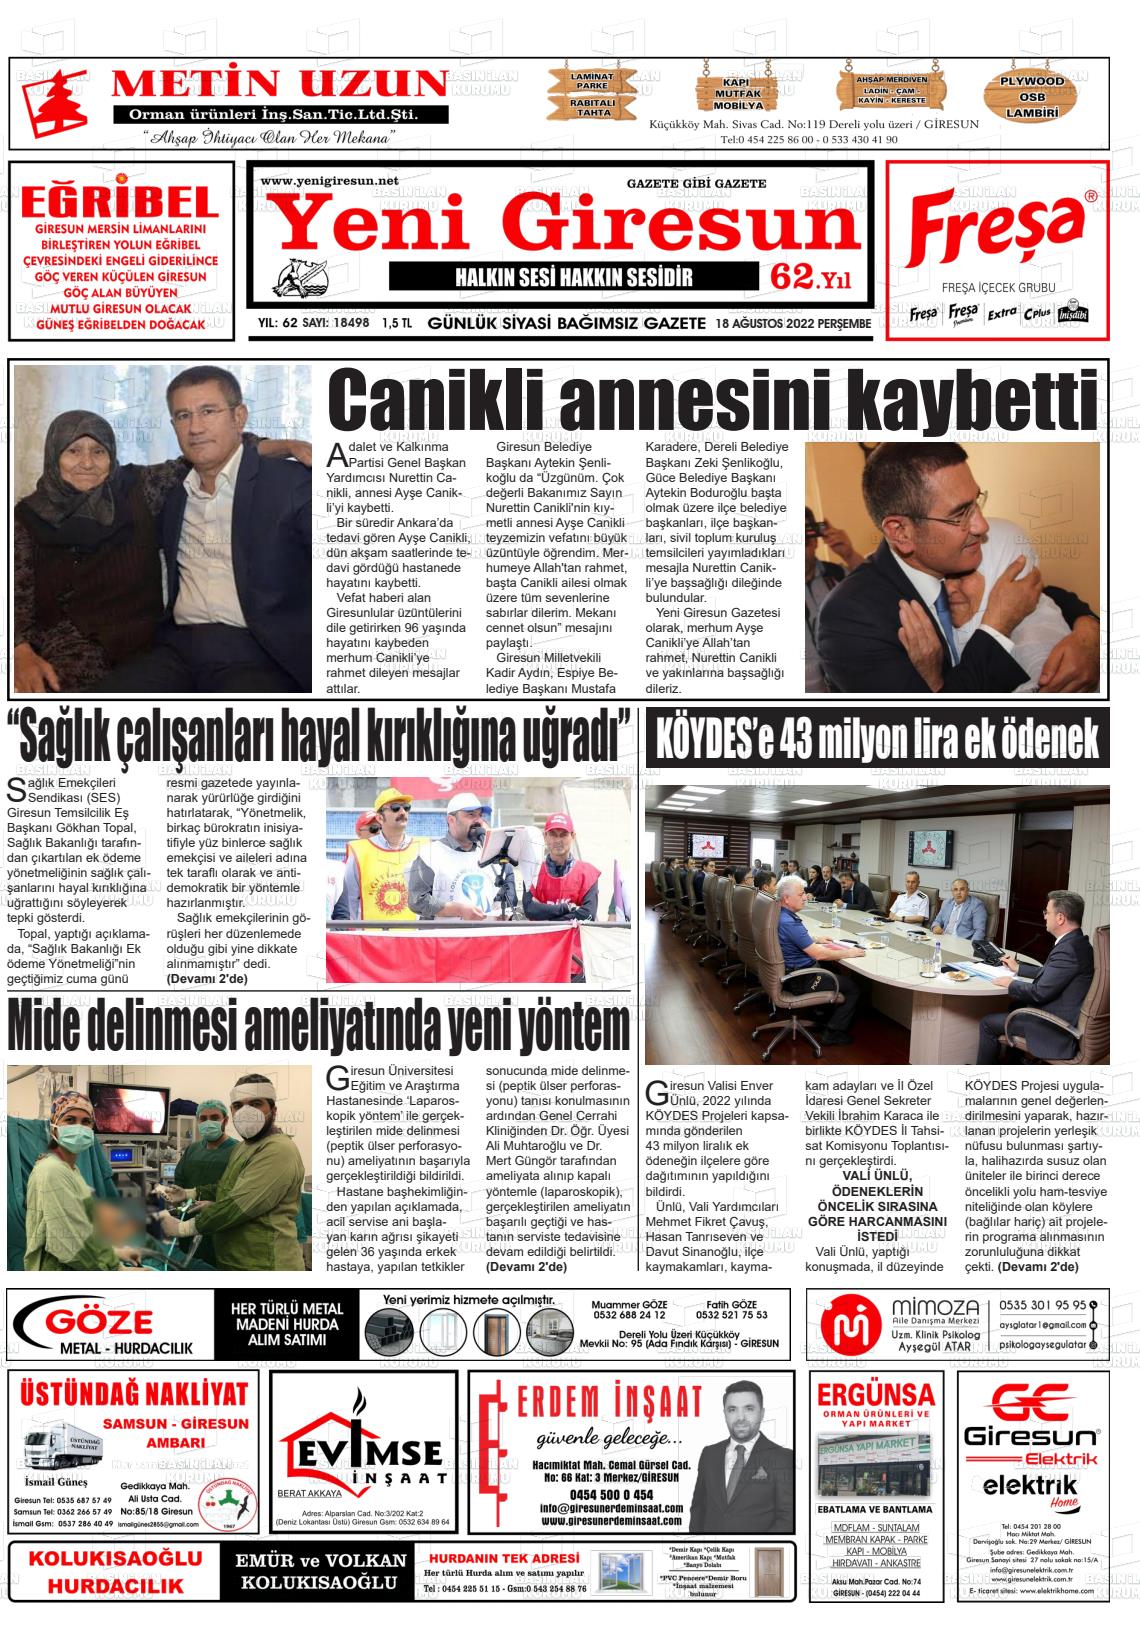 18 Ağustos 2022 Yeni Giresun Gazete Manşeti